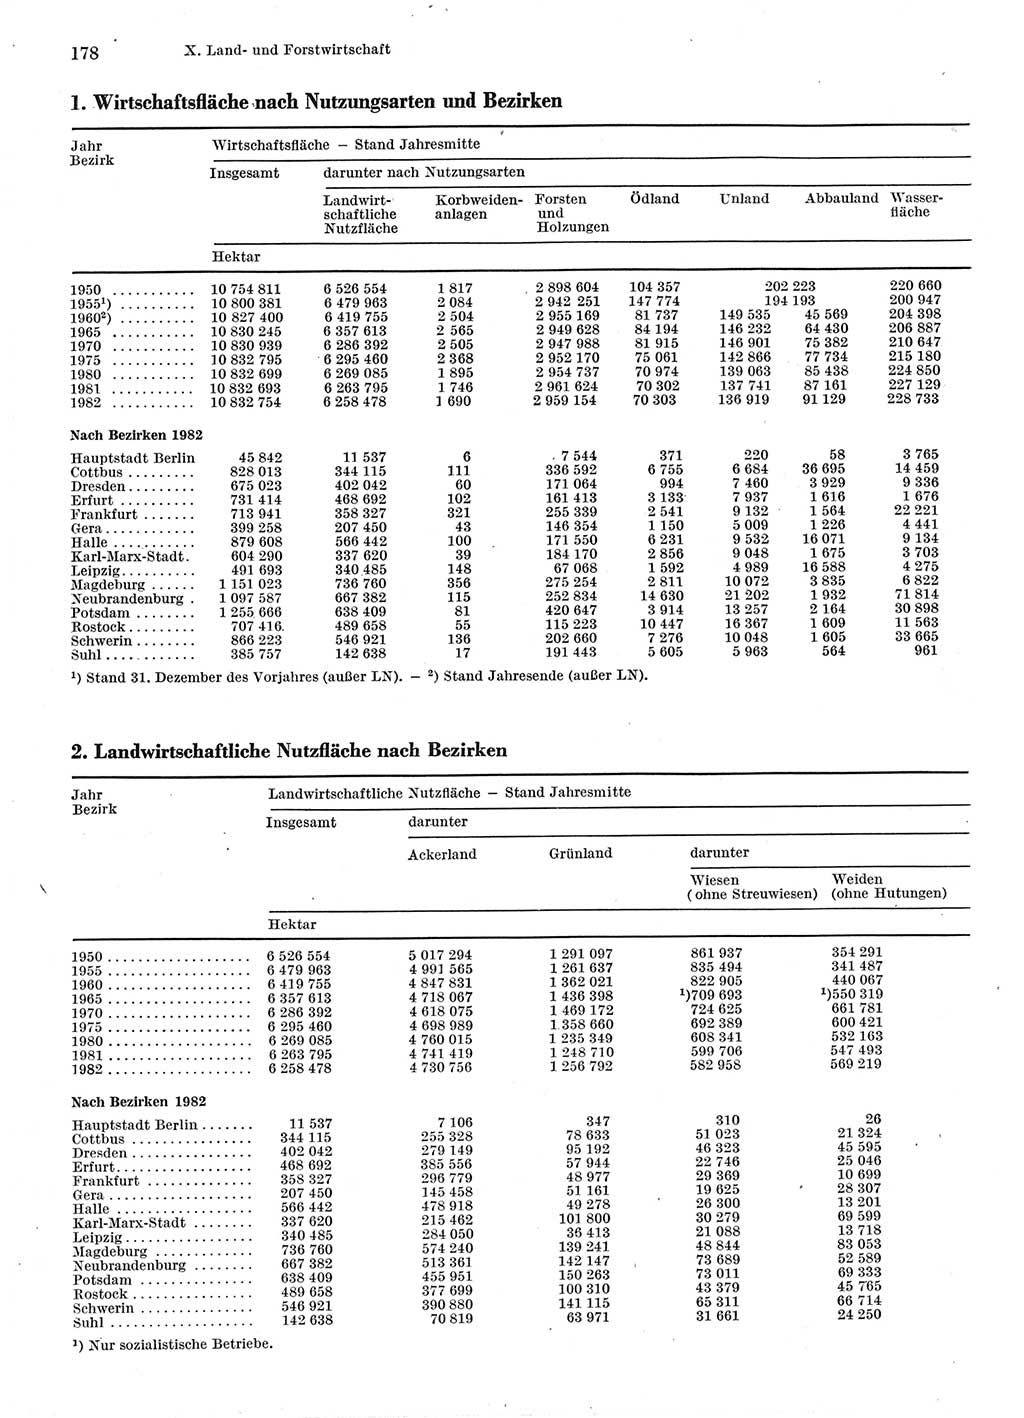 Statistisches Jahrbuch der Deutschen Demokratischen Republik (DDR) 1983, Seite 178 (Stat. Jb. DDR 1983, S. 178)